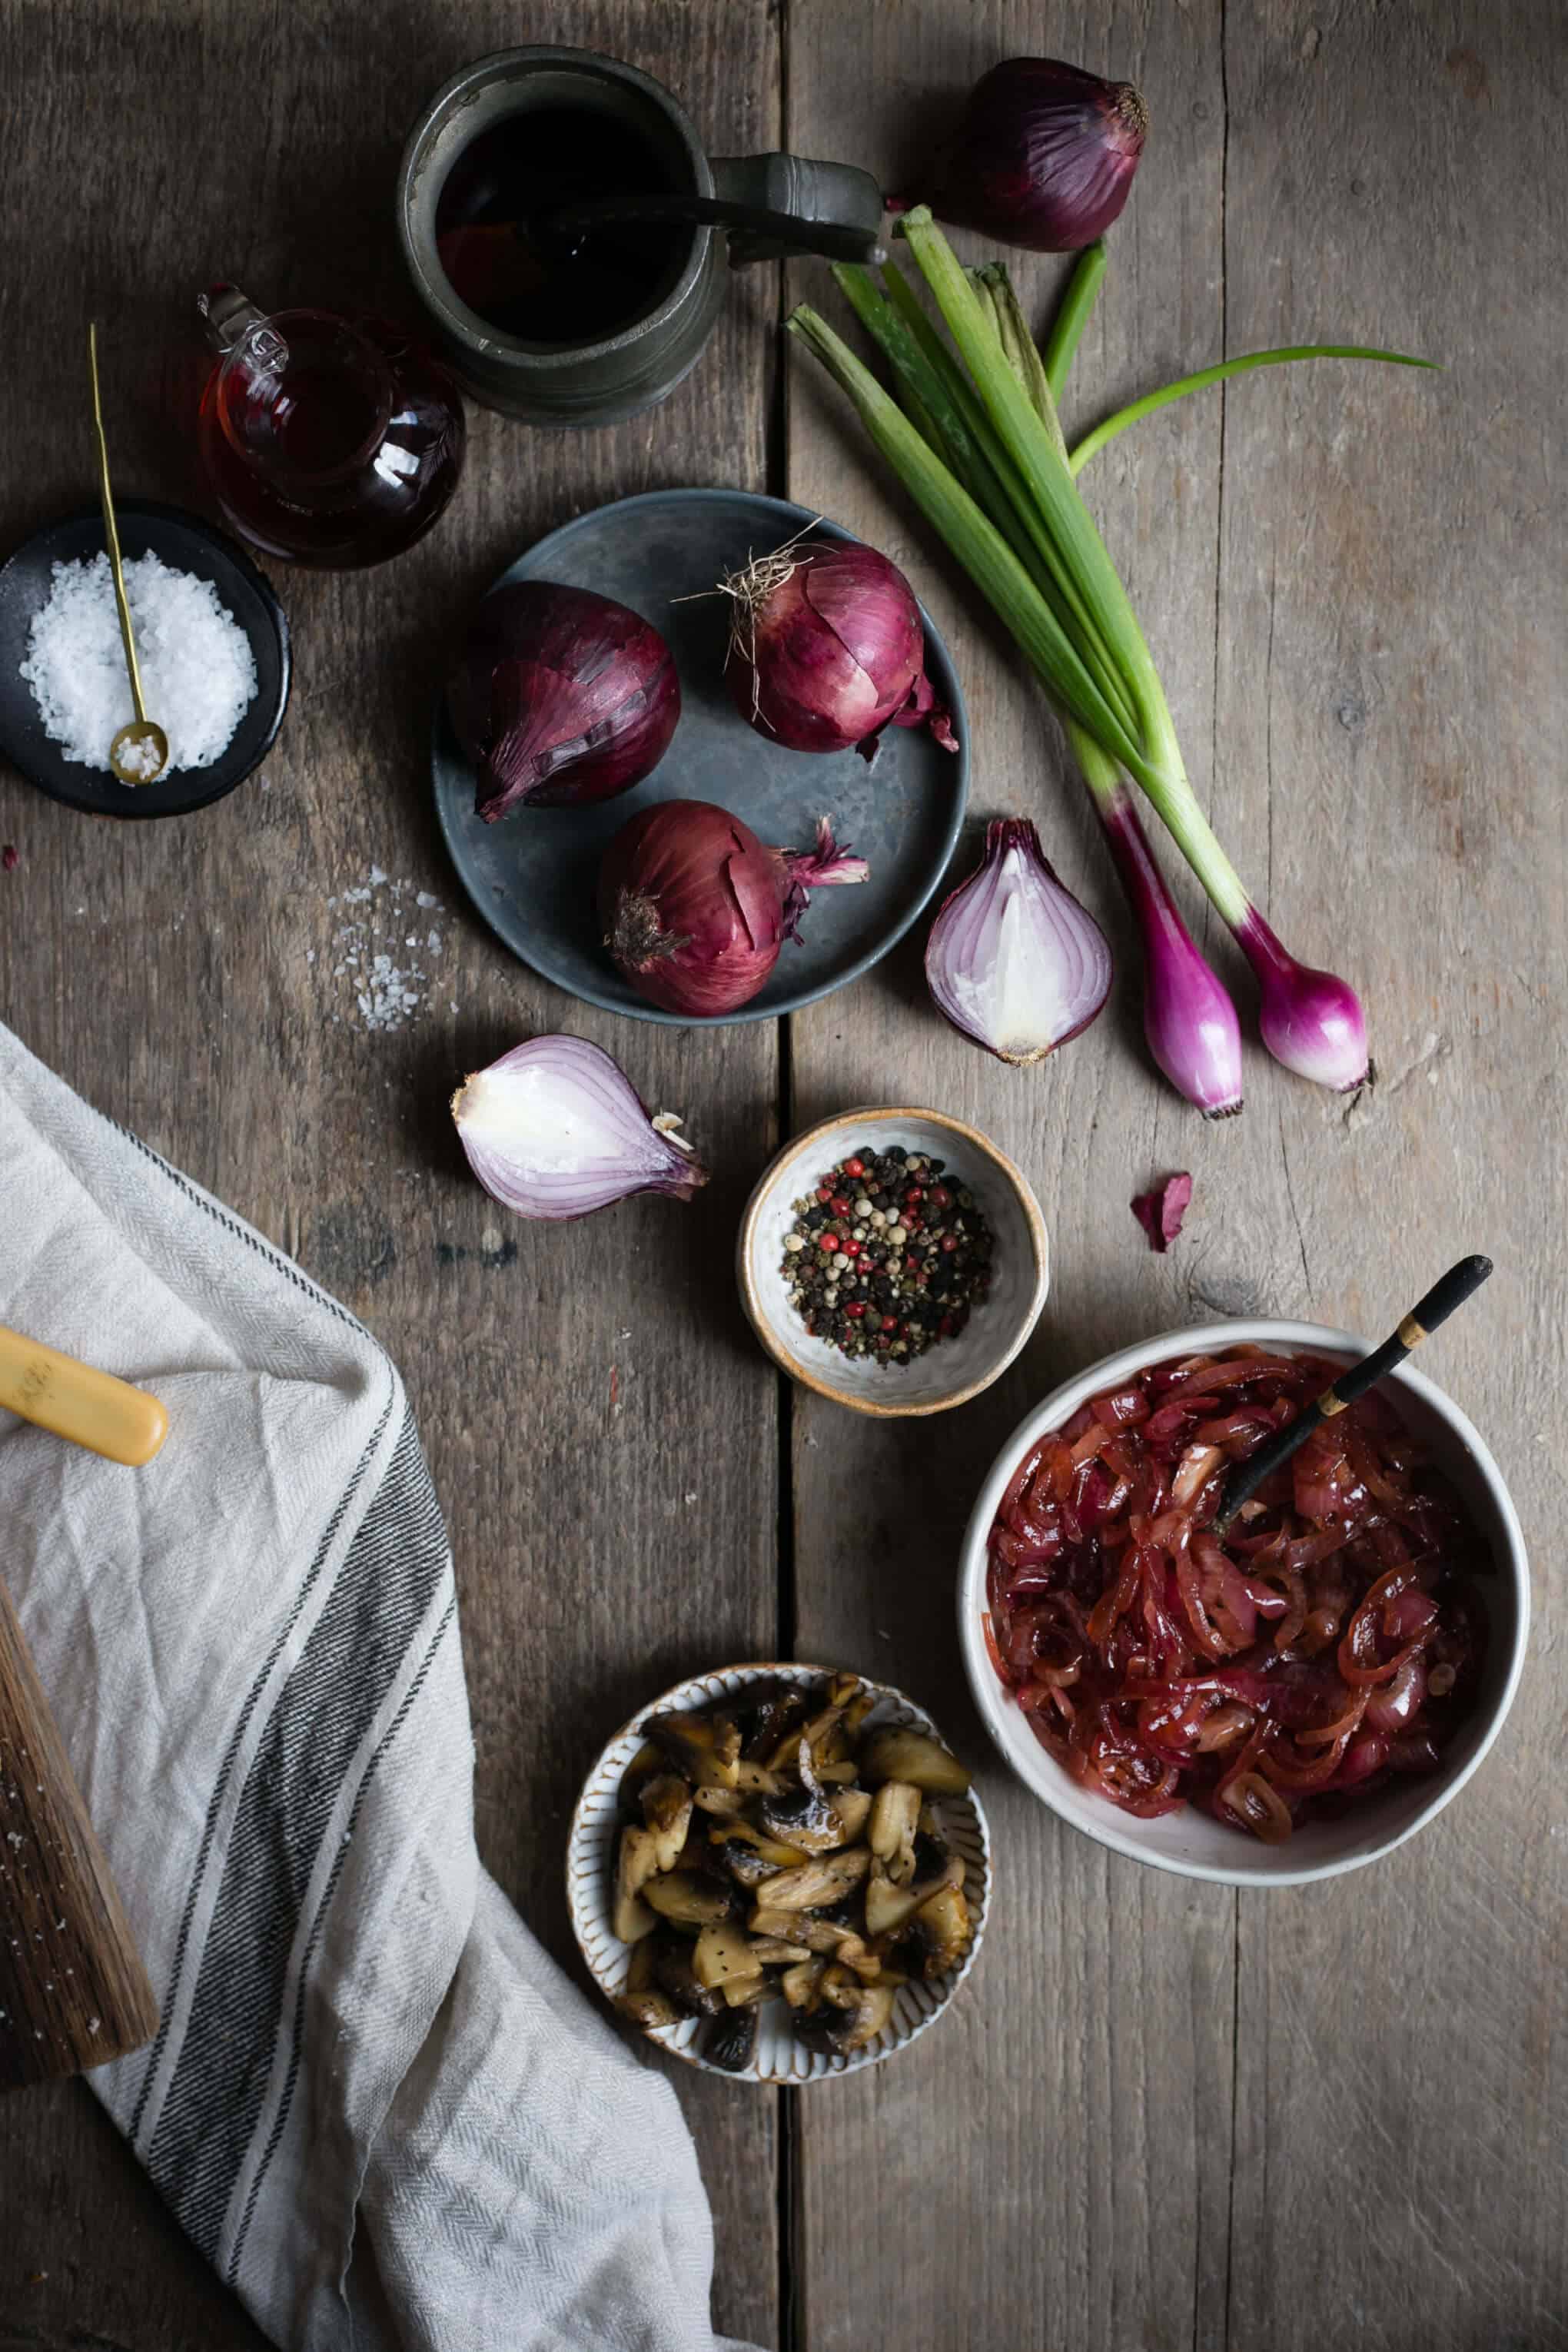 Easy red onion jam recipe | via @annabanana.co